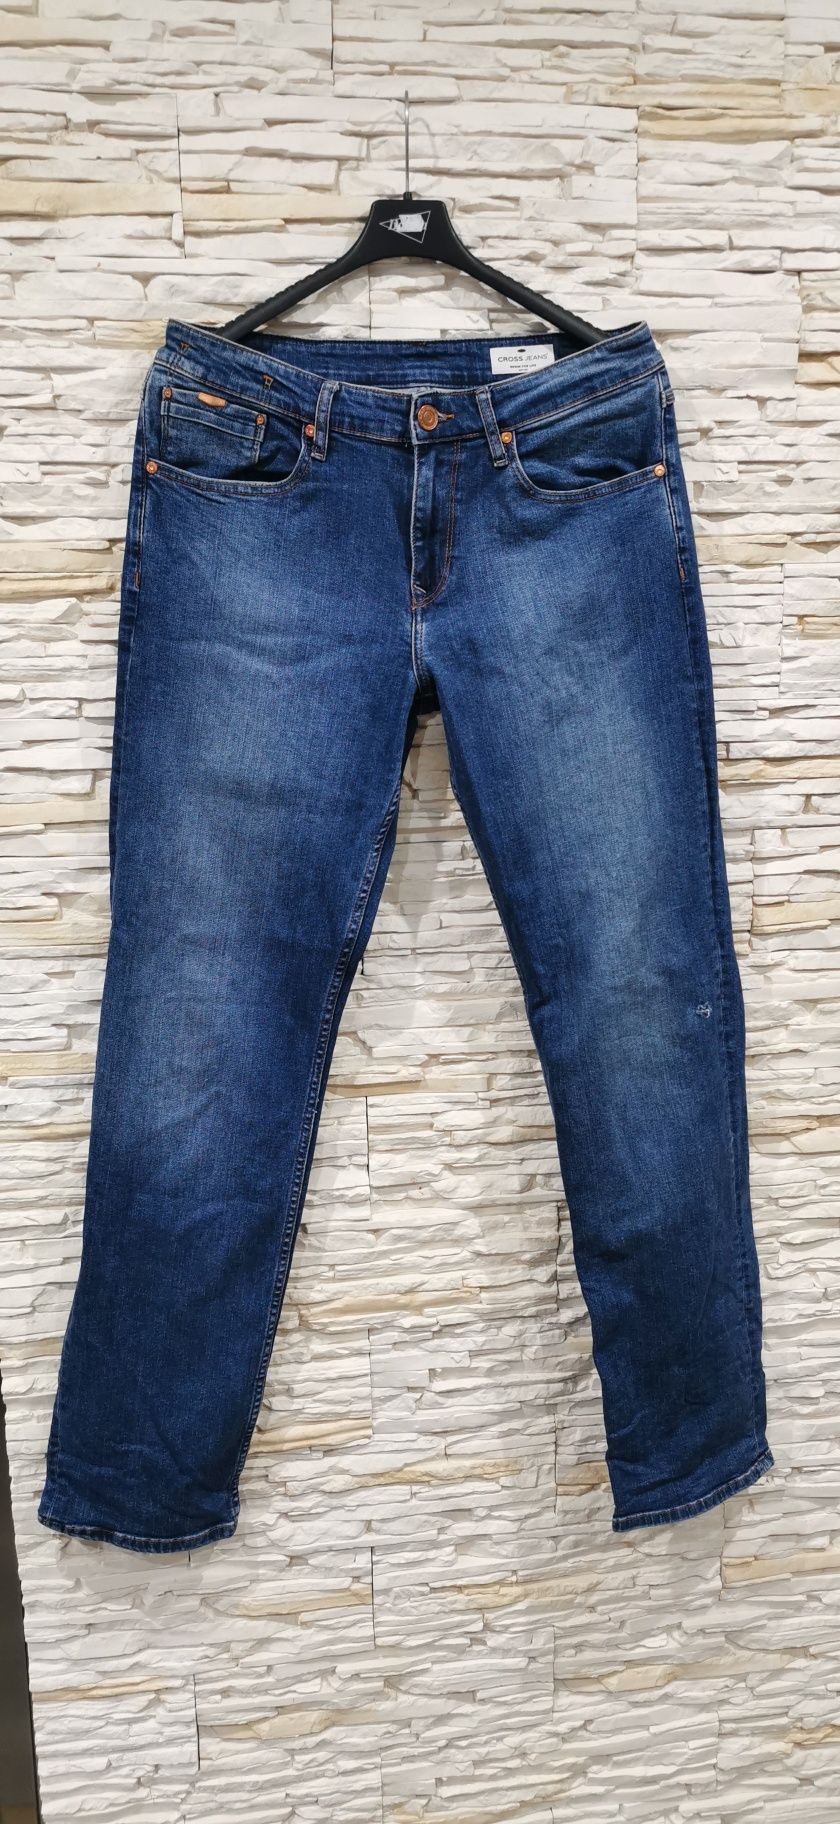 Spodnie męskie cross jeans 32/34